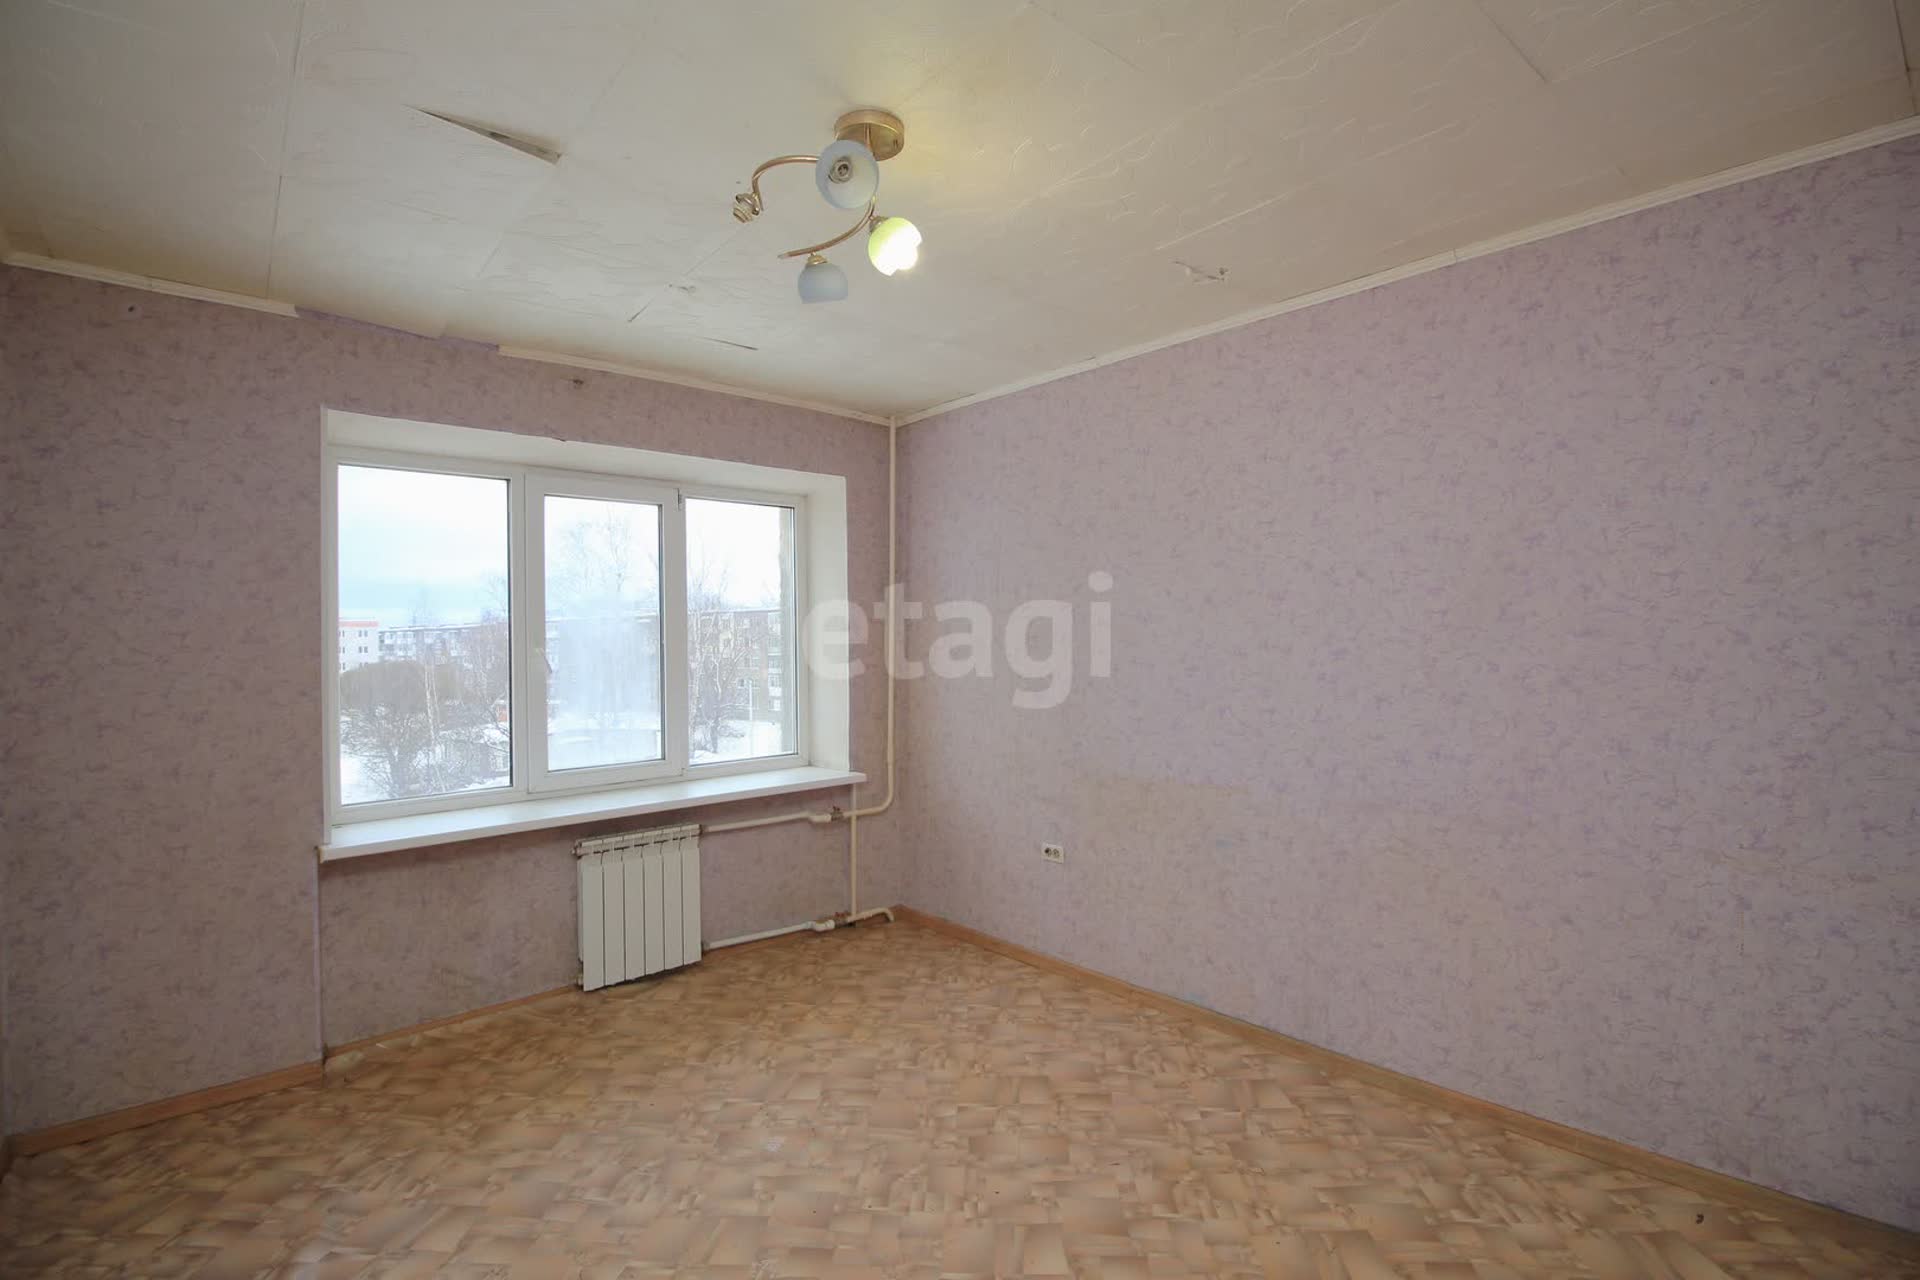 Продажа квартир улучшенной планировки в Минске в микрорайоне Сухарево